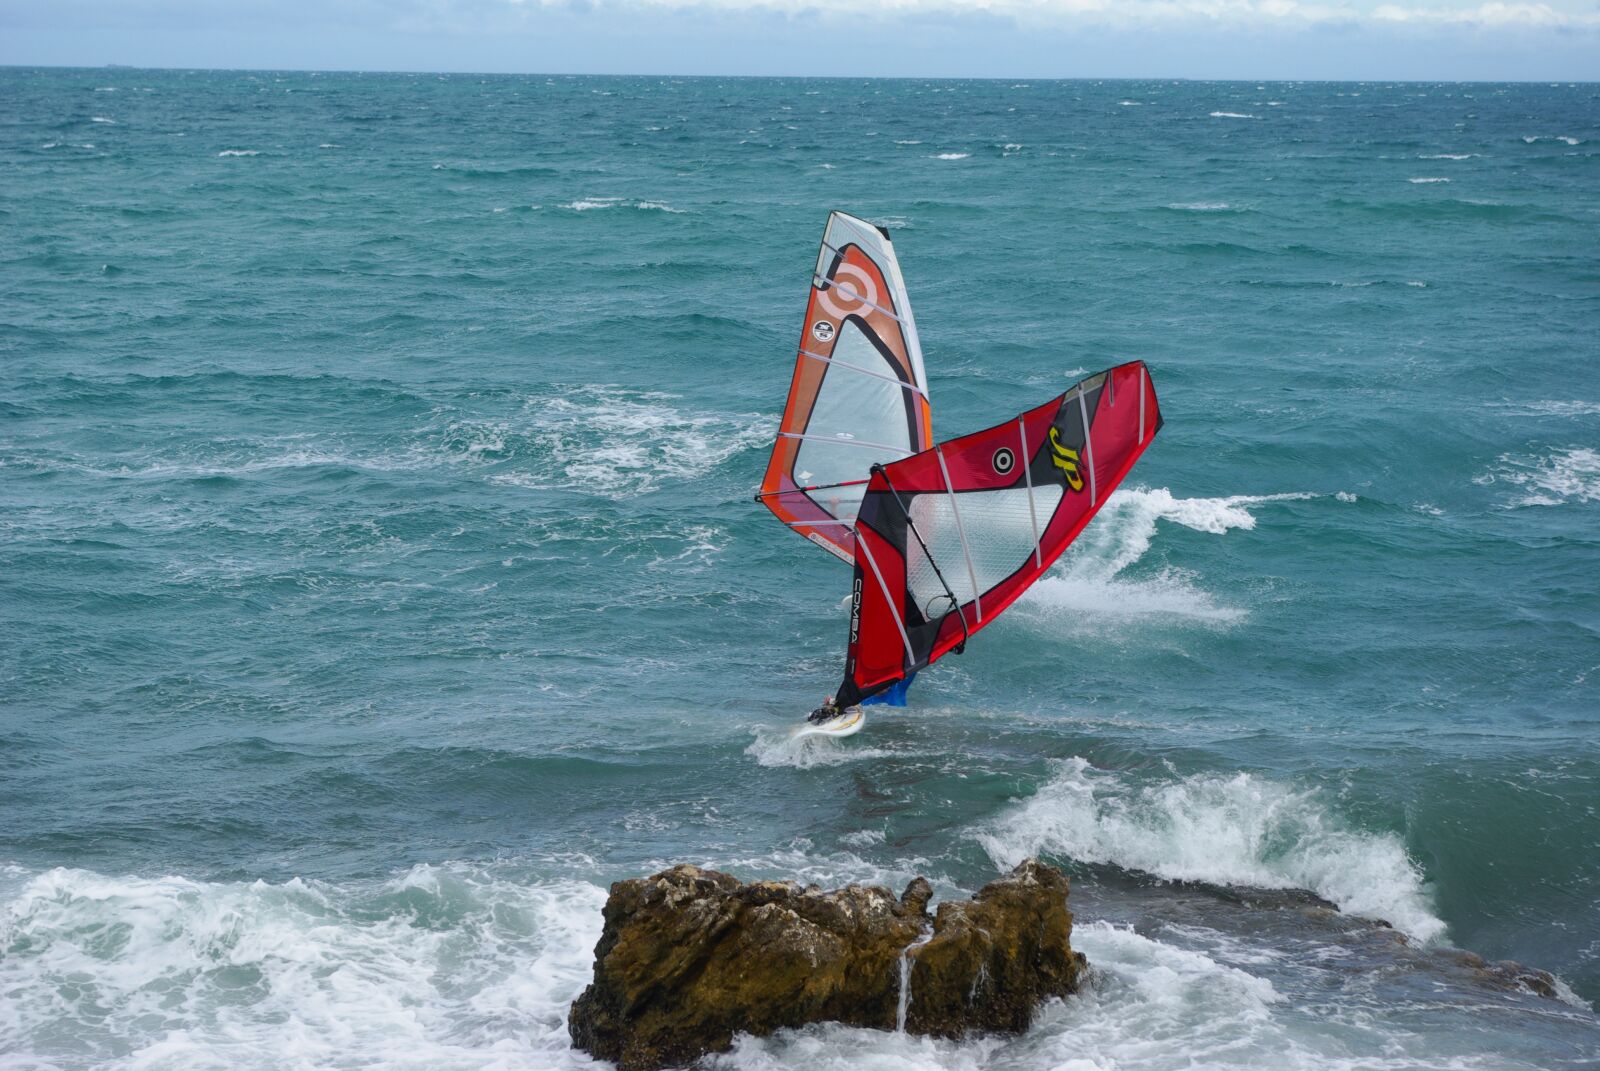 Samsung GX-10 sample photo. Sport, windsurfing, sailboard photography